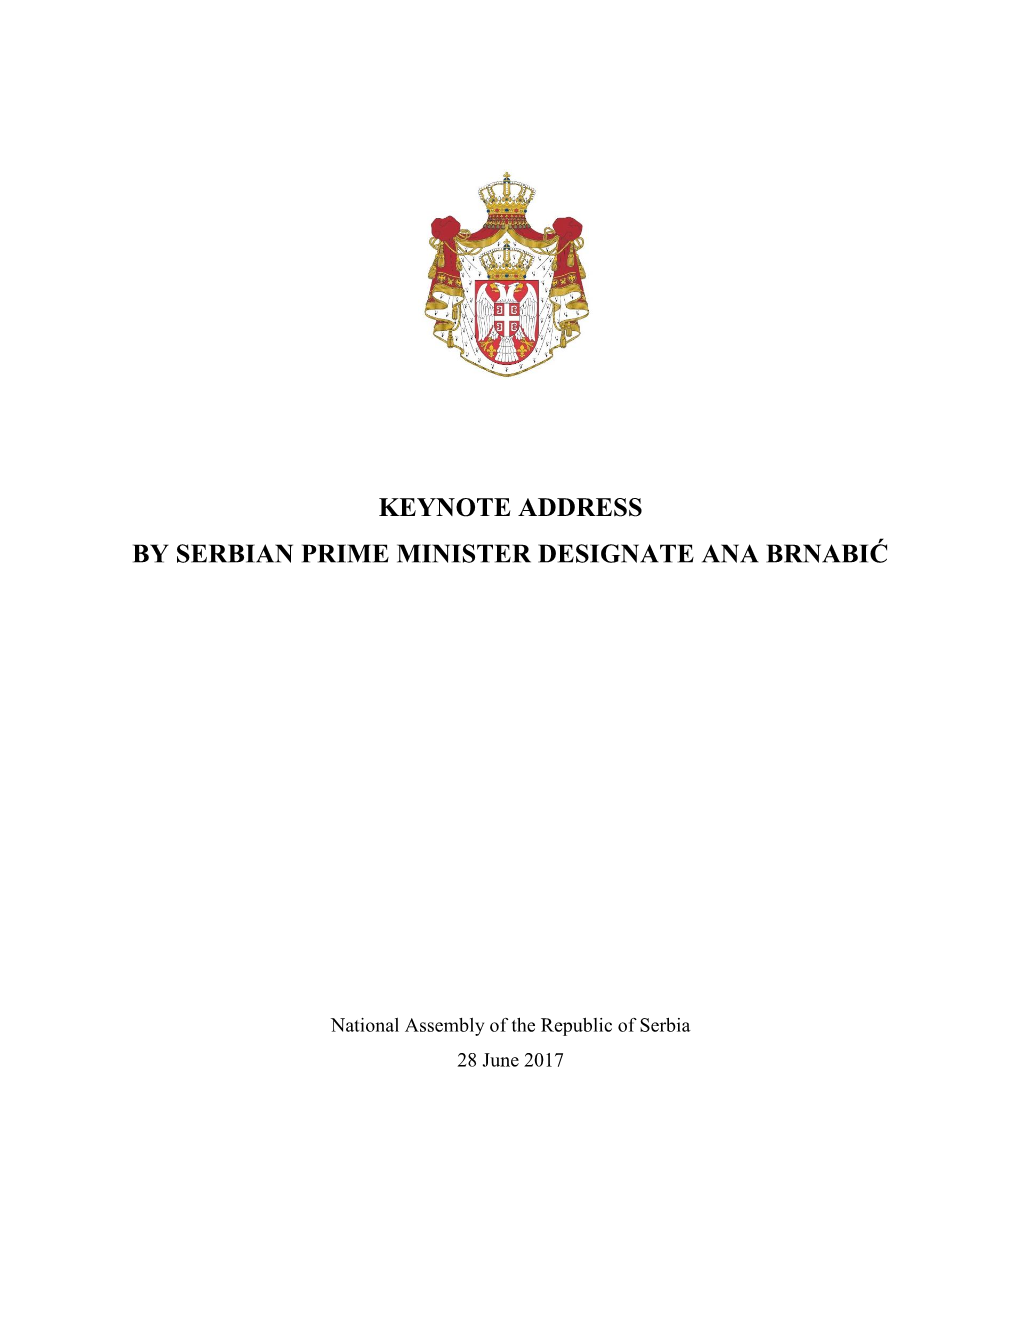 Keynote Address by Serbian Prime Minister Designate Ana Brnabić